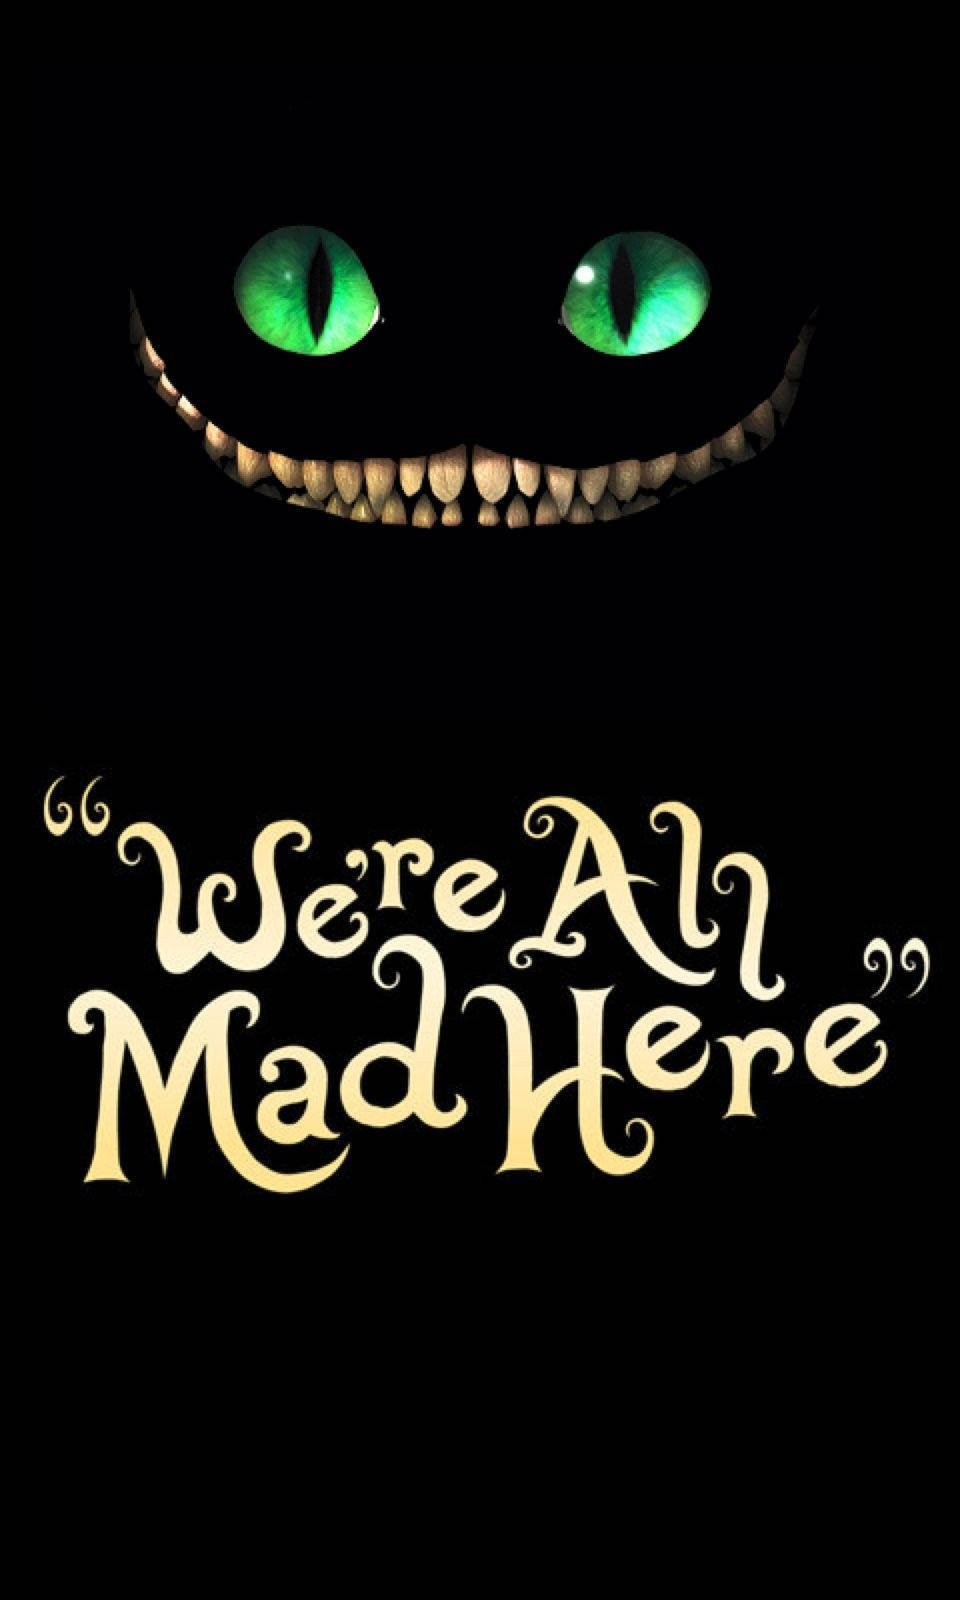 Mad Cheshire Cat